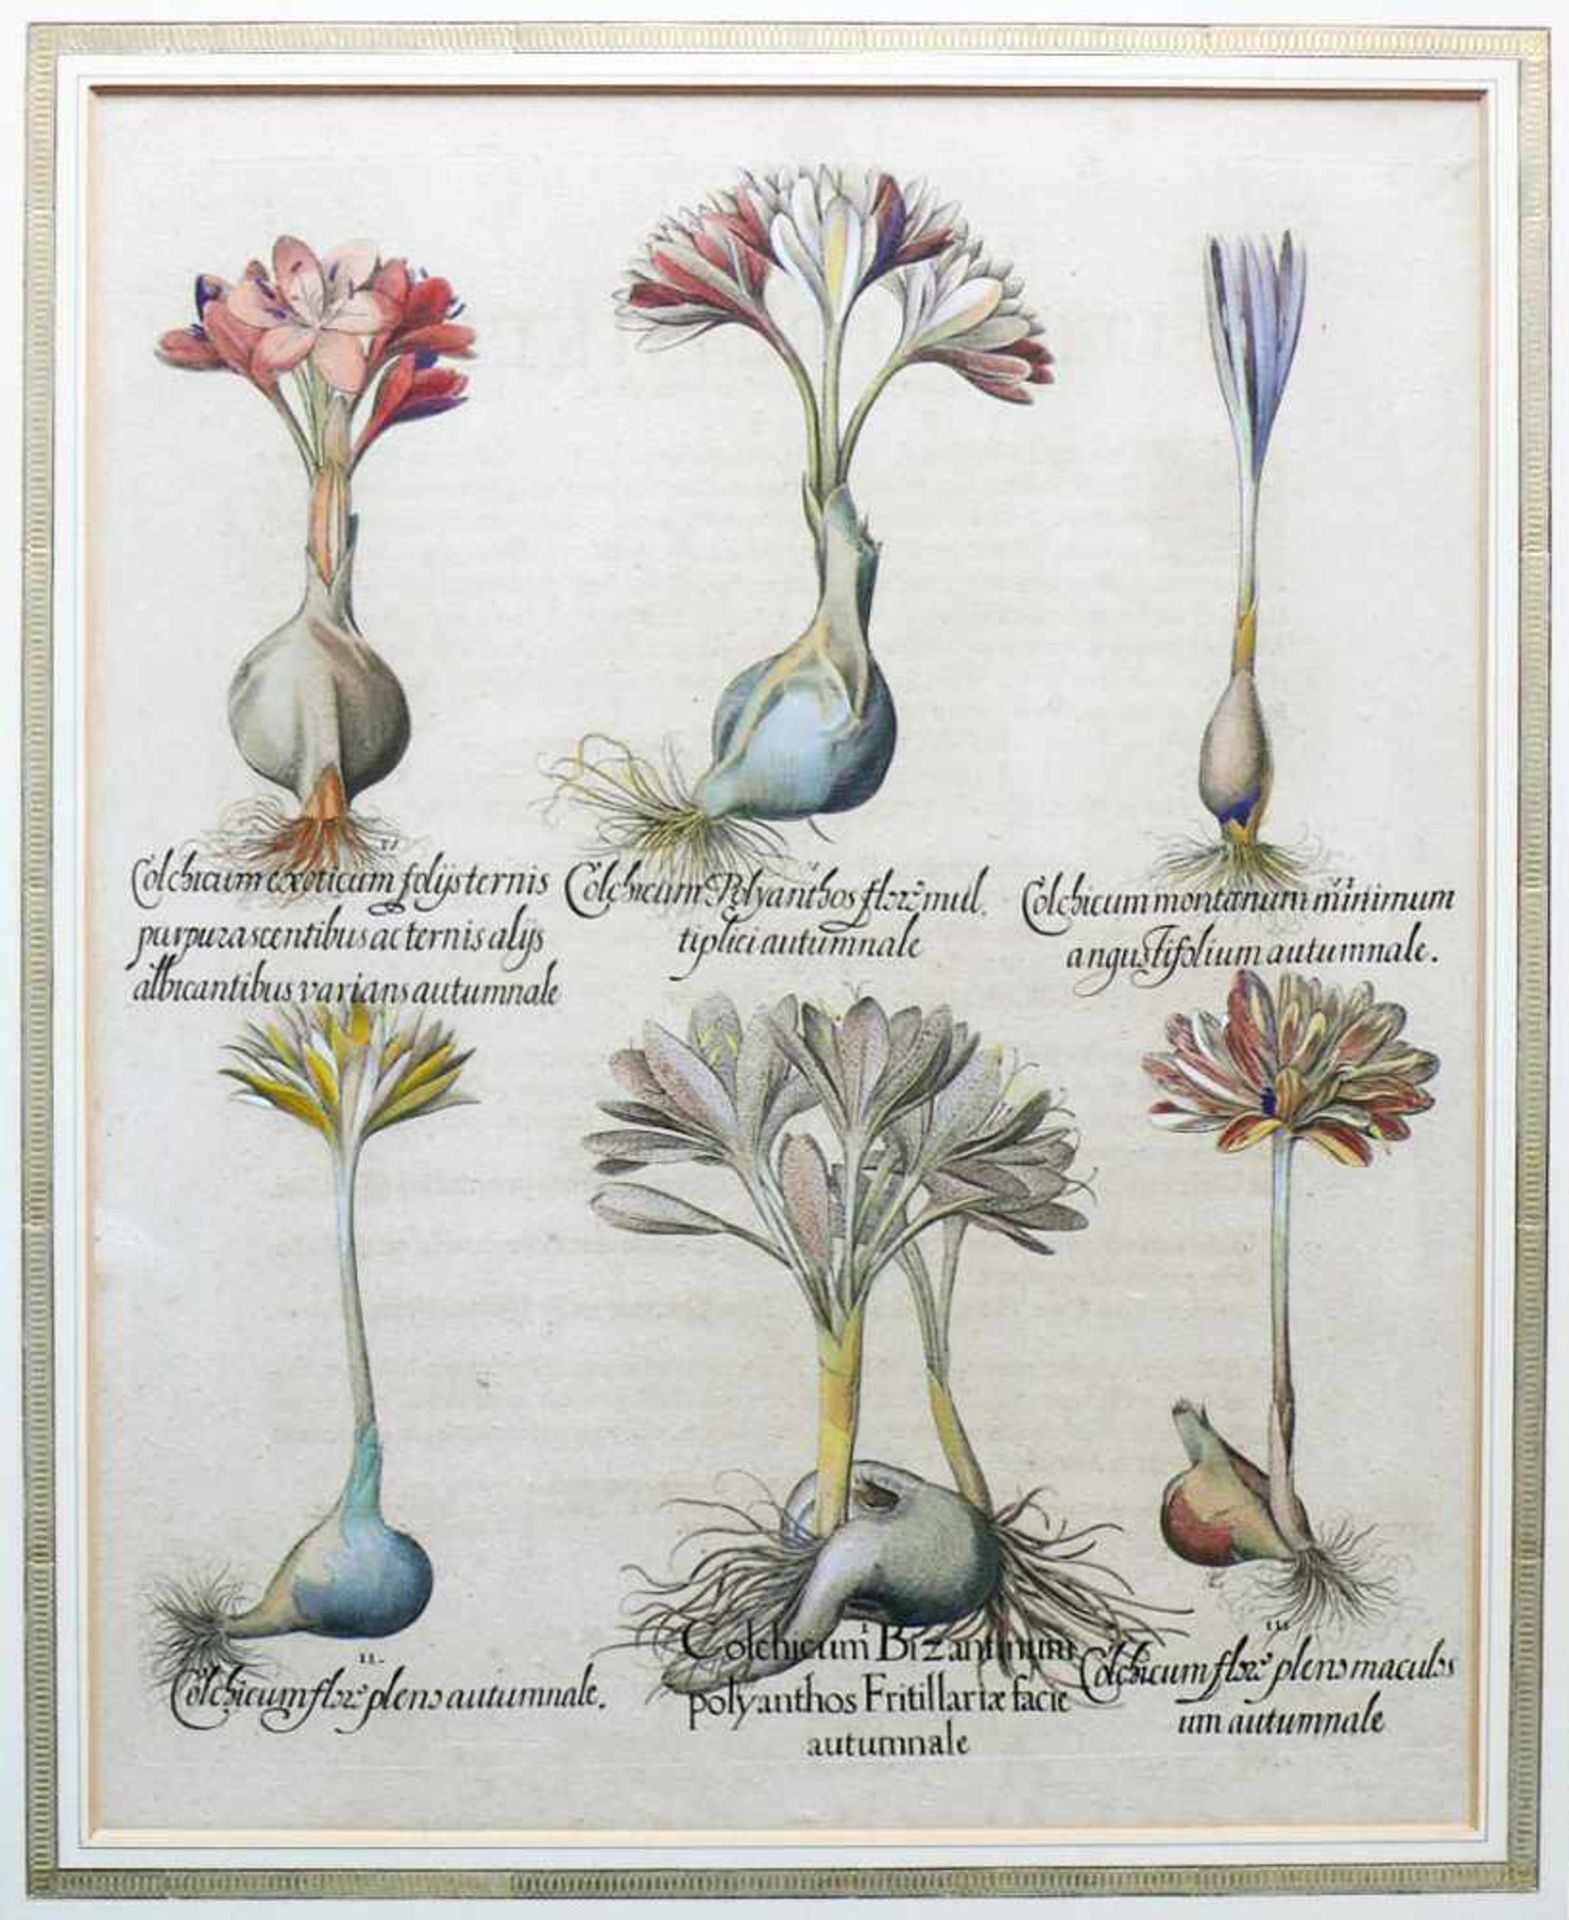 Hortus Eystettensis (Basilius Besler, 1561- 1629)